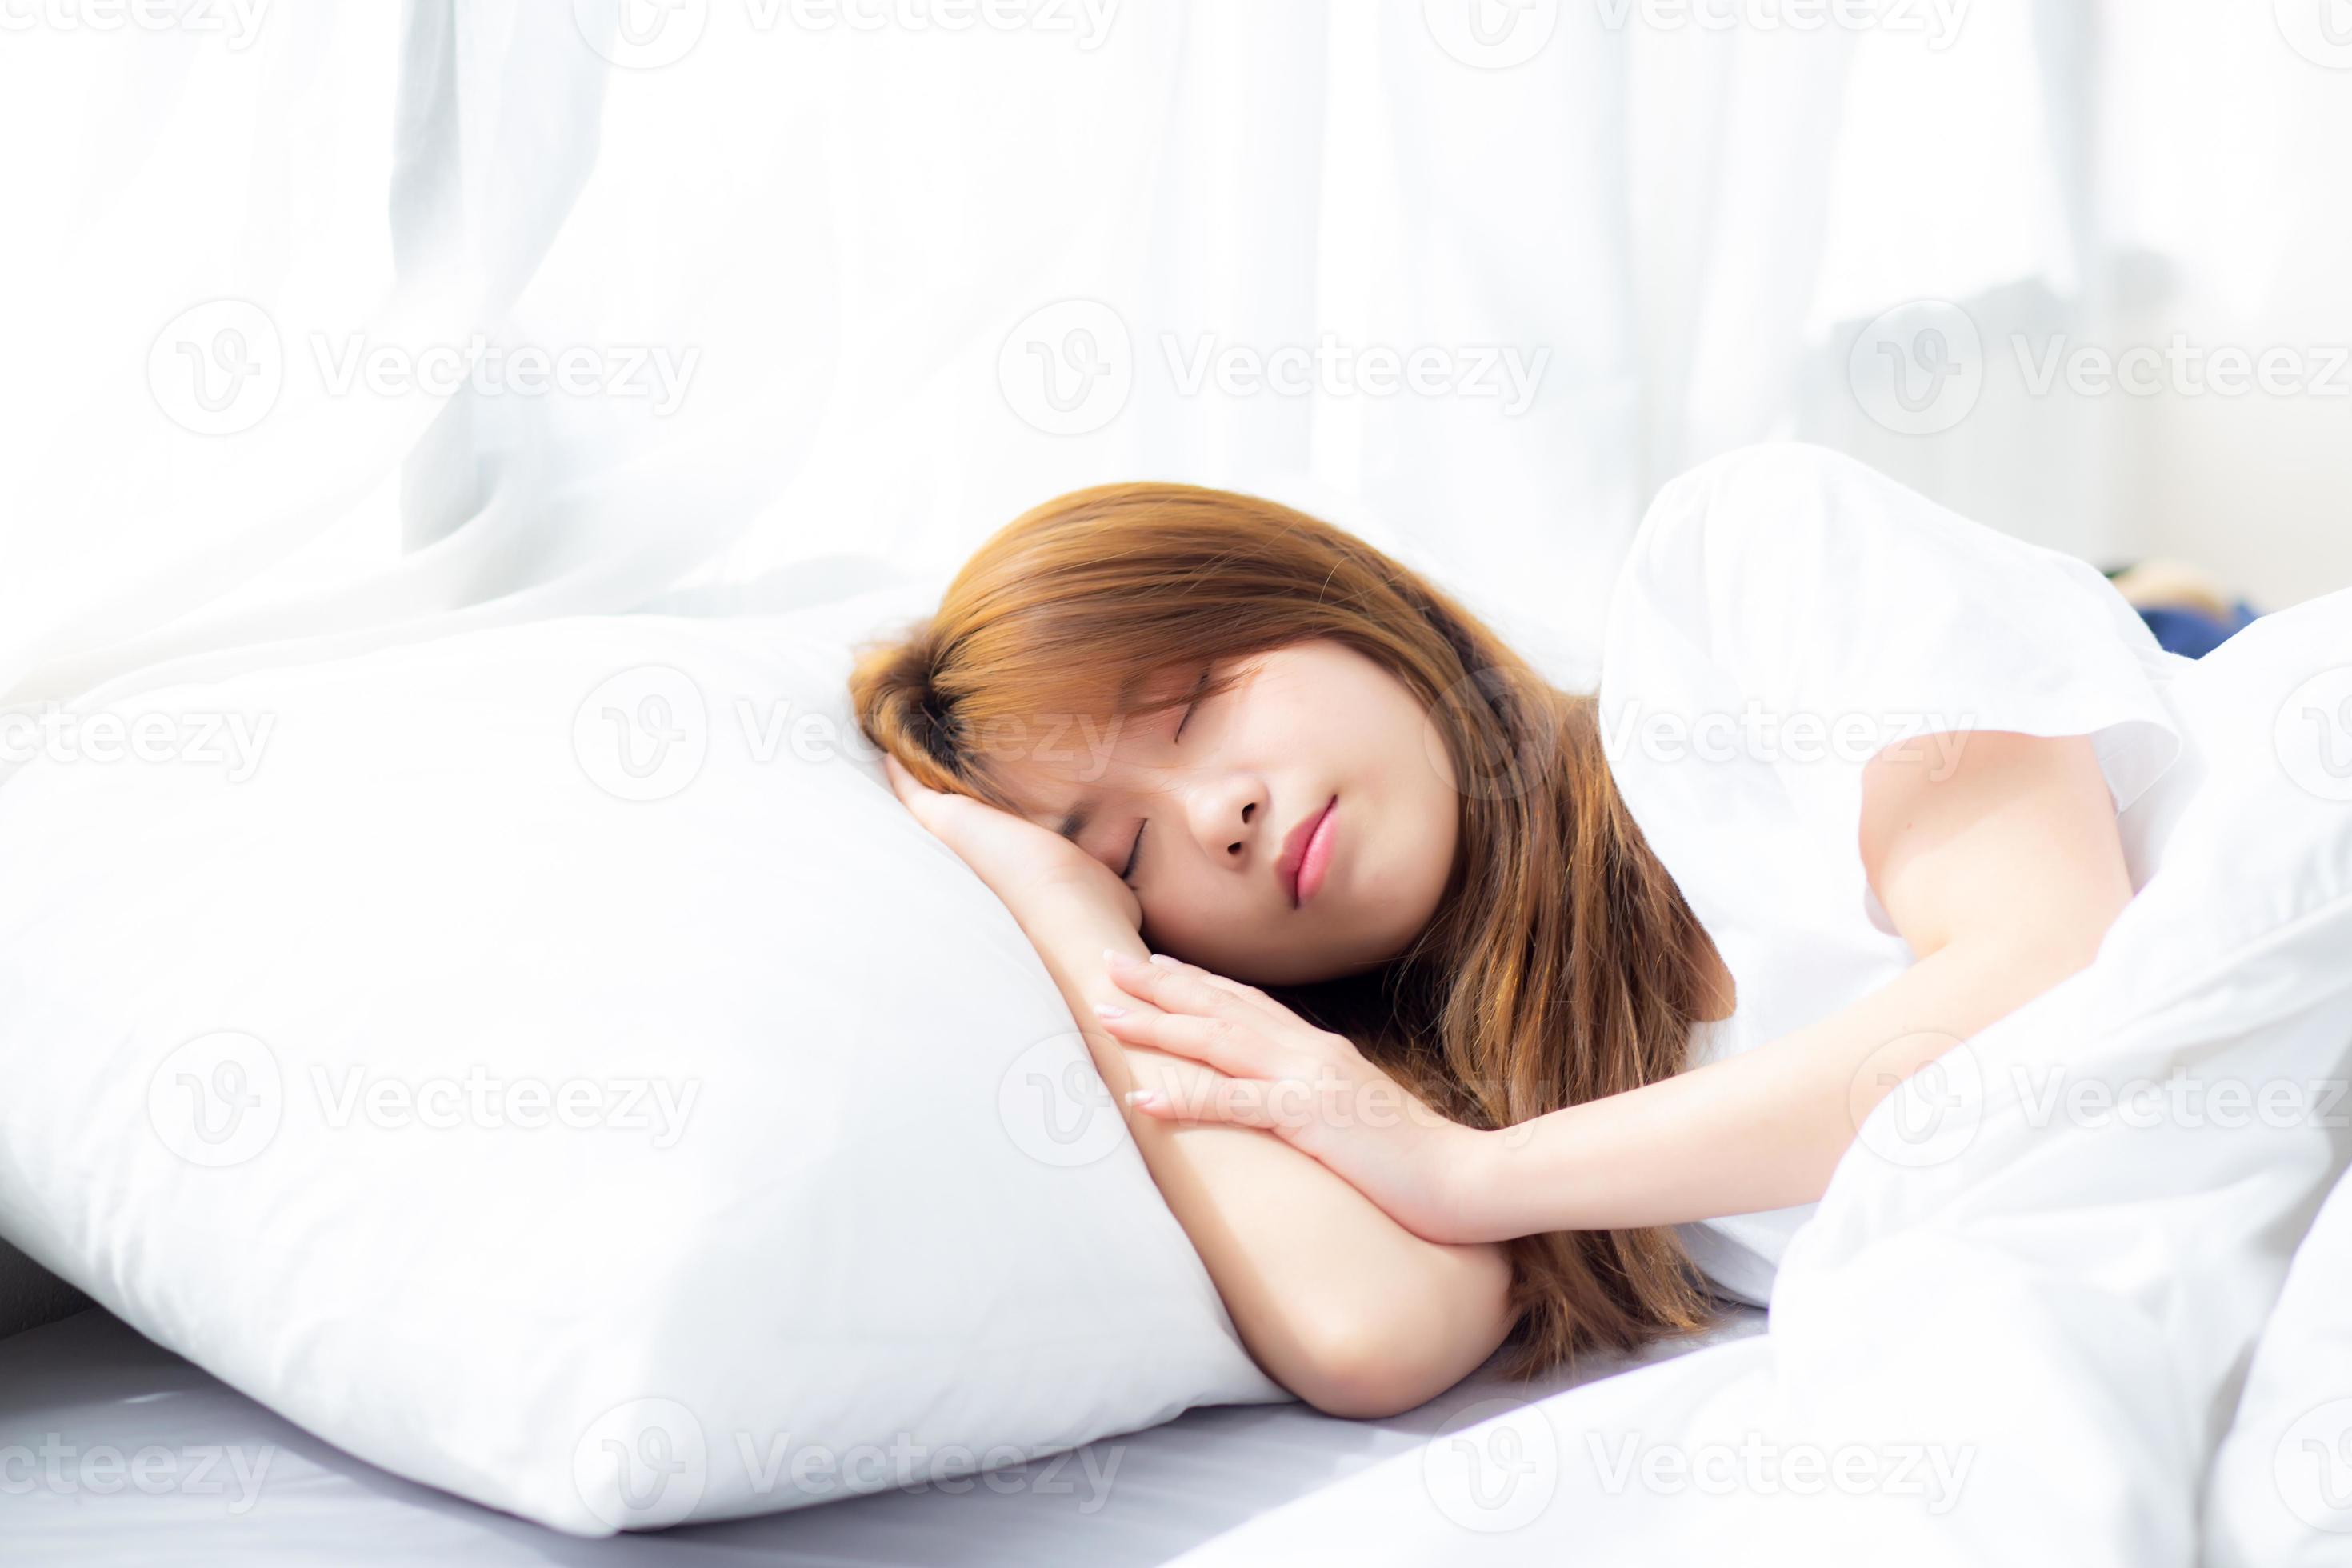 Automatisch Inspecteur Uithoudingsvermogen jonge aziatische vrouw slaap liggend in bed met hoofd op kussen. 3509284  Stockfoto